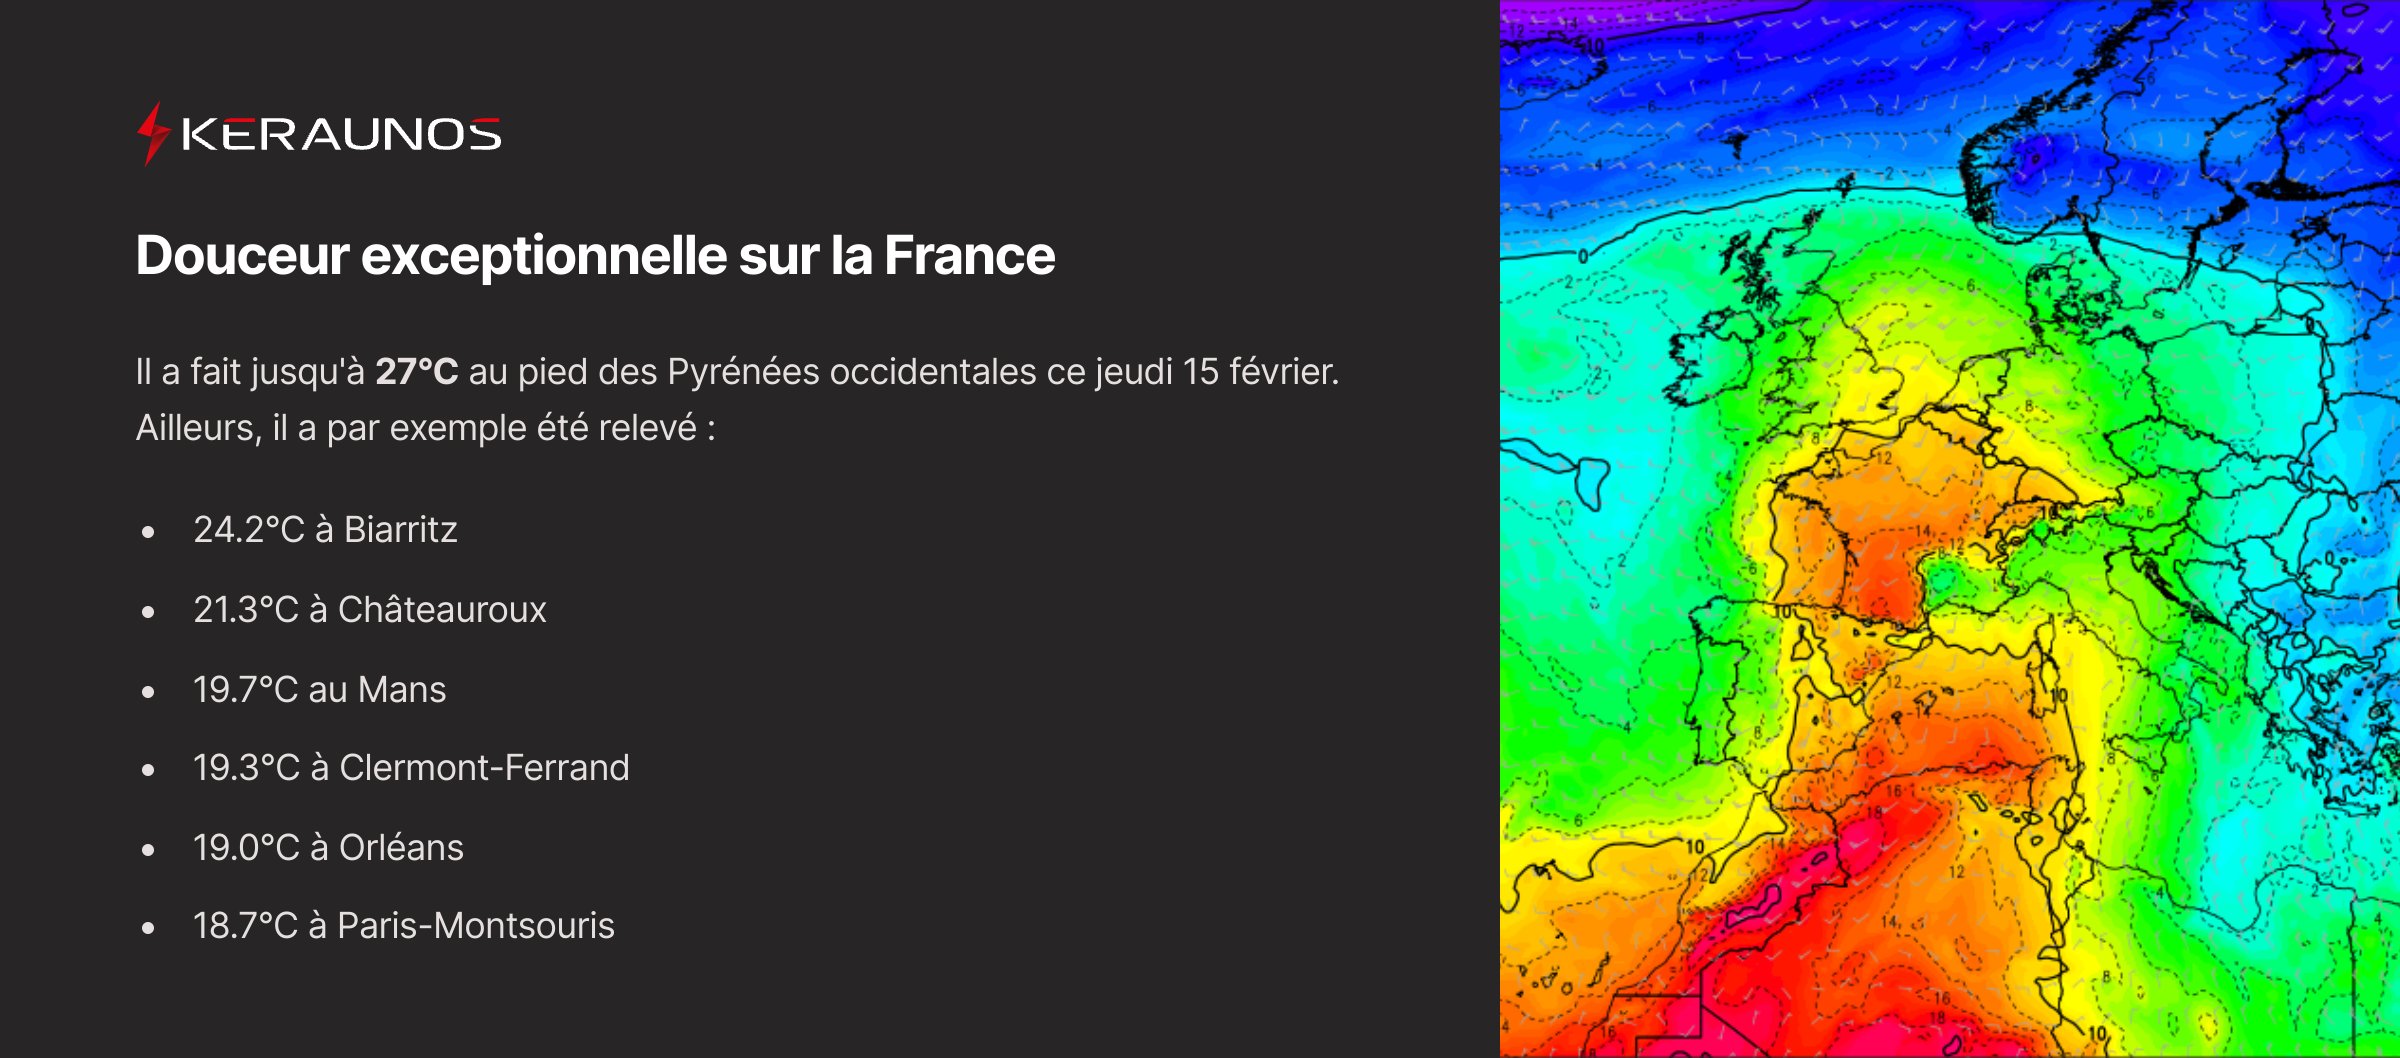 <p>Comme prévu, des températures anormalement chaudes ont été relevées ce jeudi sur la France, avec localement 26 à 27°C au pied des #Pyrénées par effet de foehn. Les températures sont 6.5°C au dessus des normales à l'échelle nationale.</p>